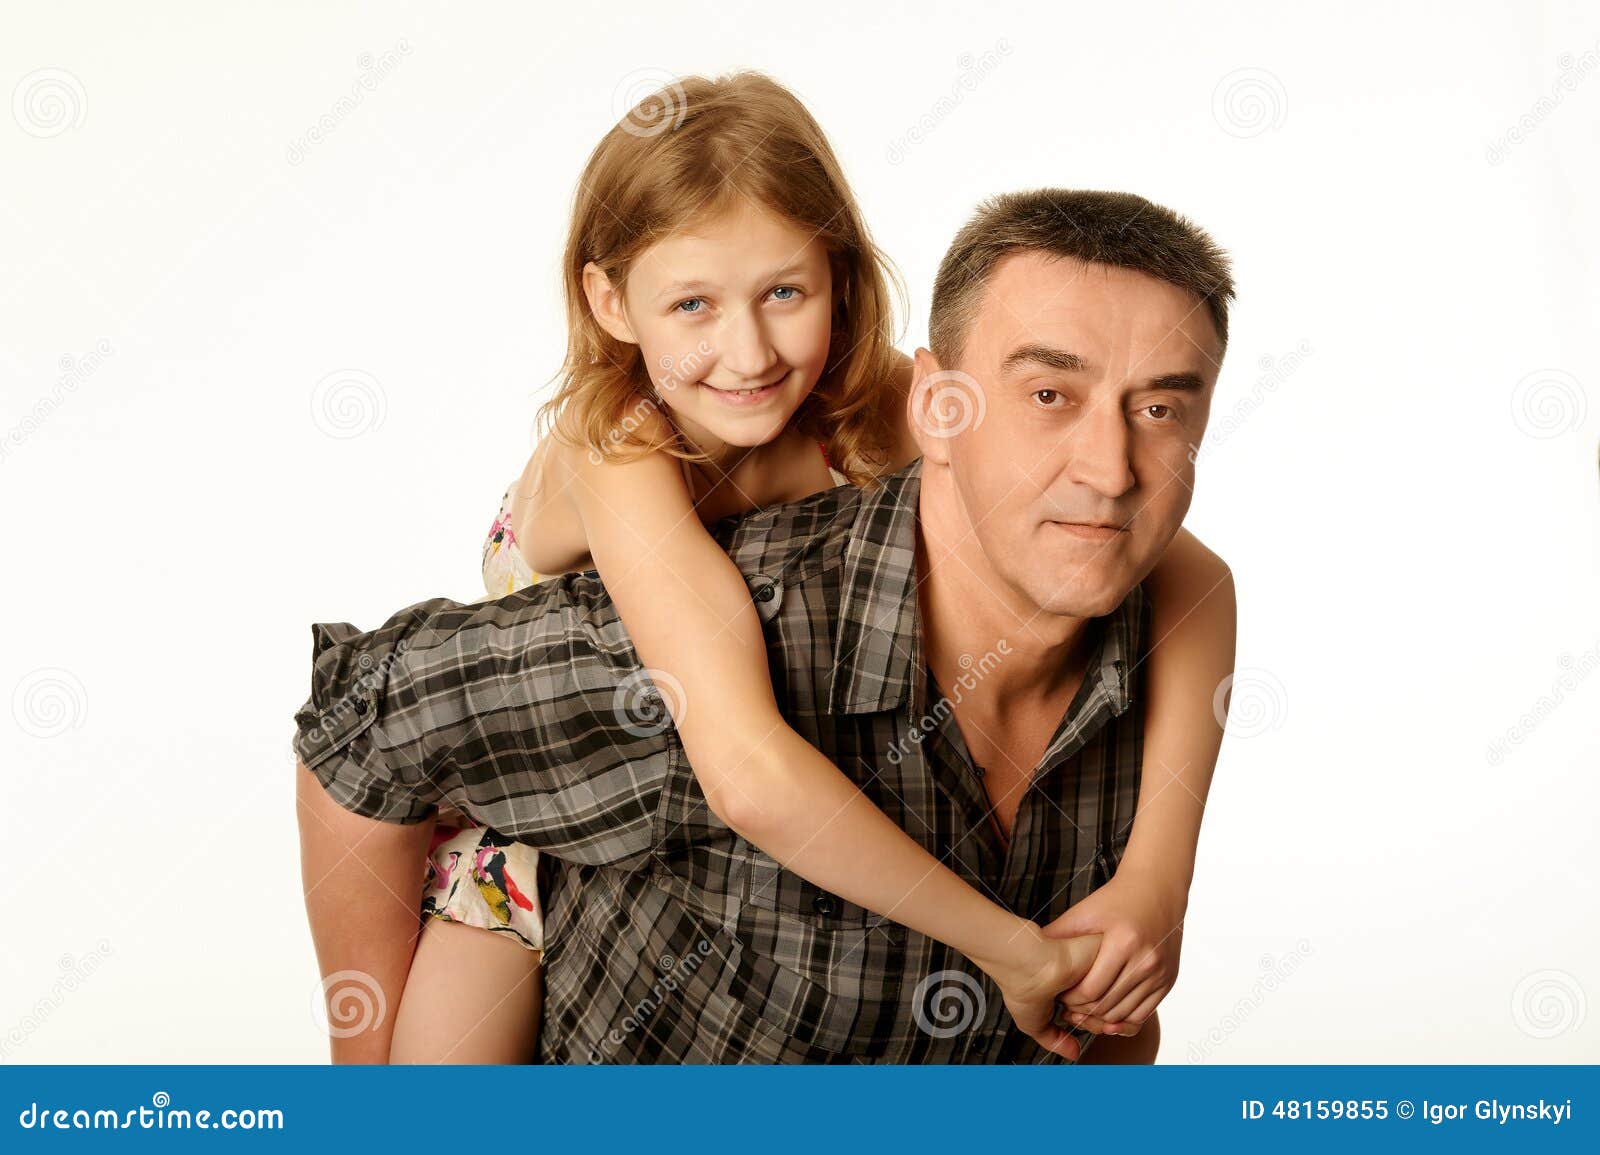 папа трахал 10 летнюю дочь фото 65